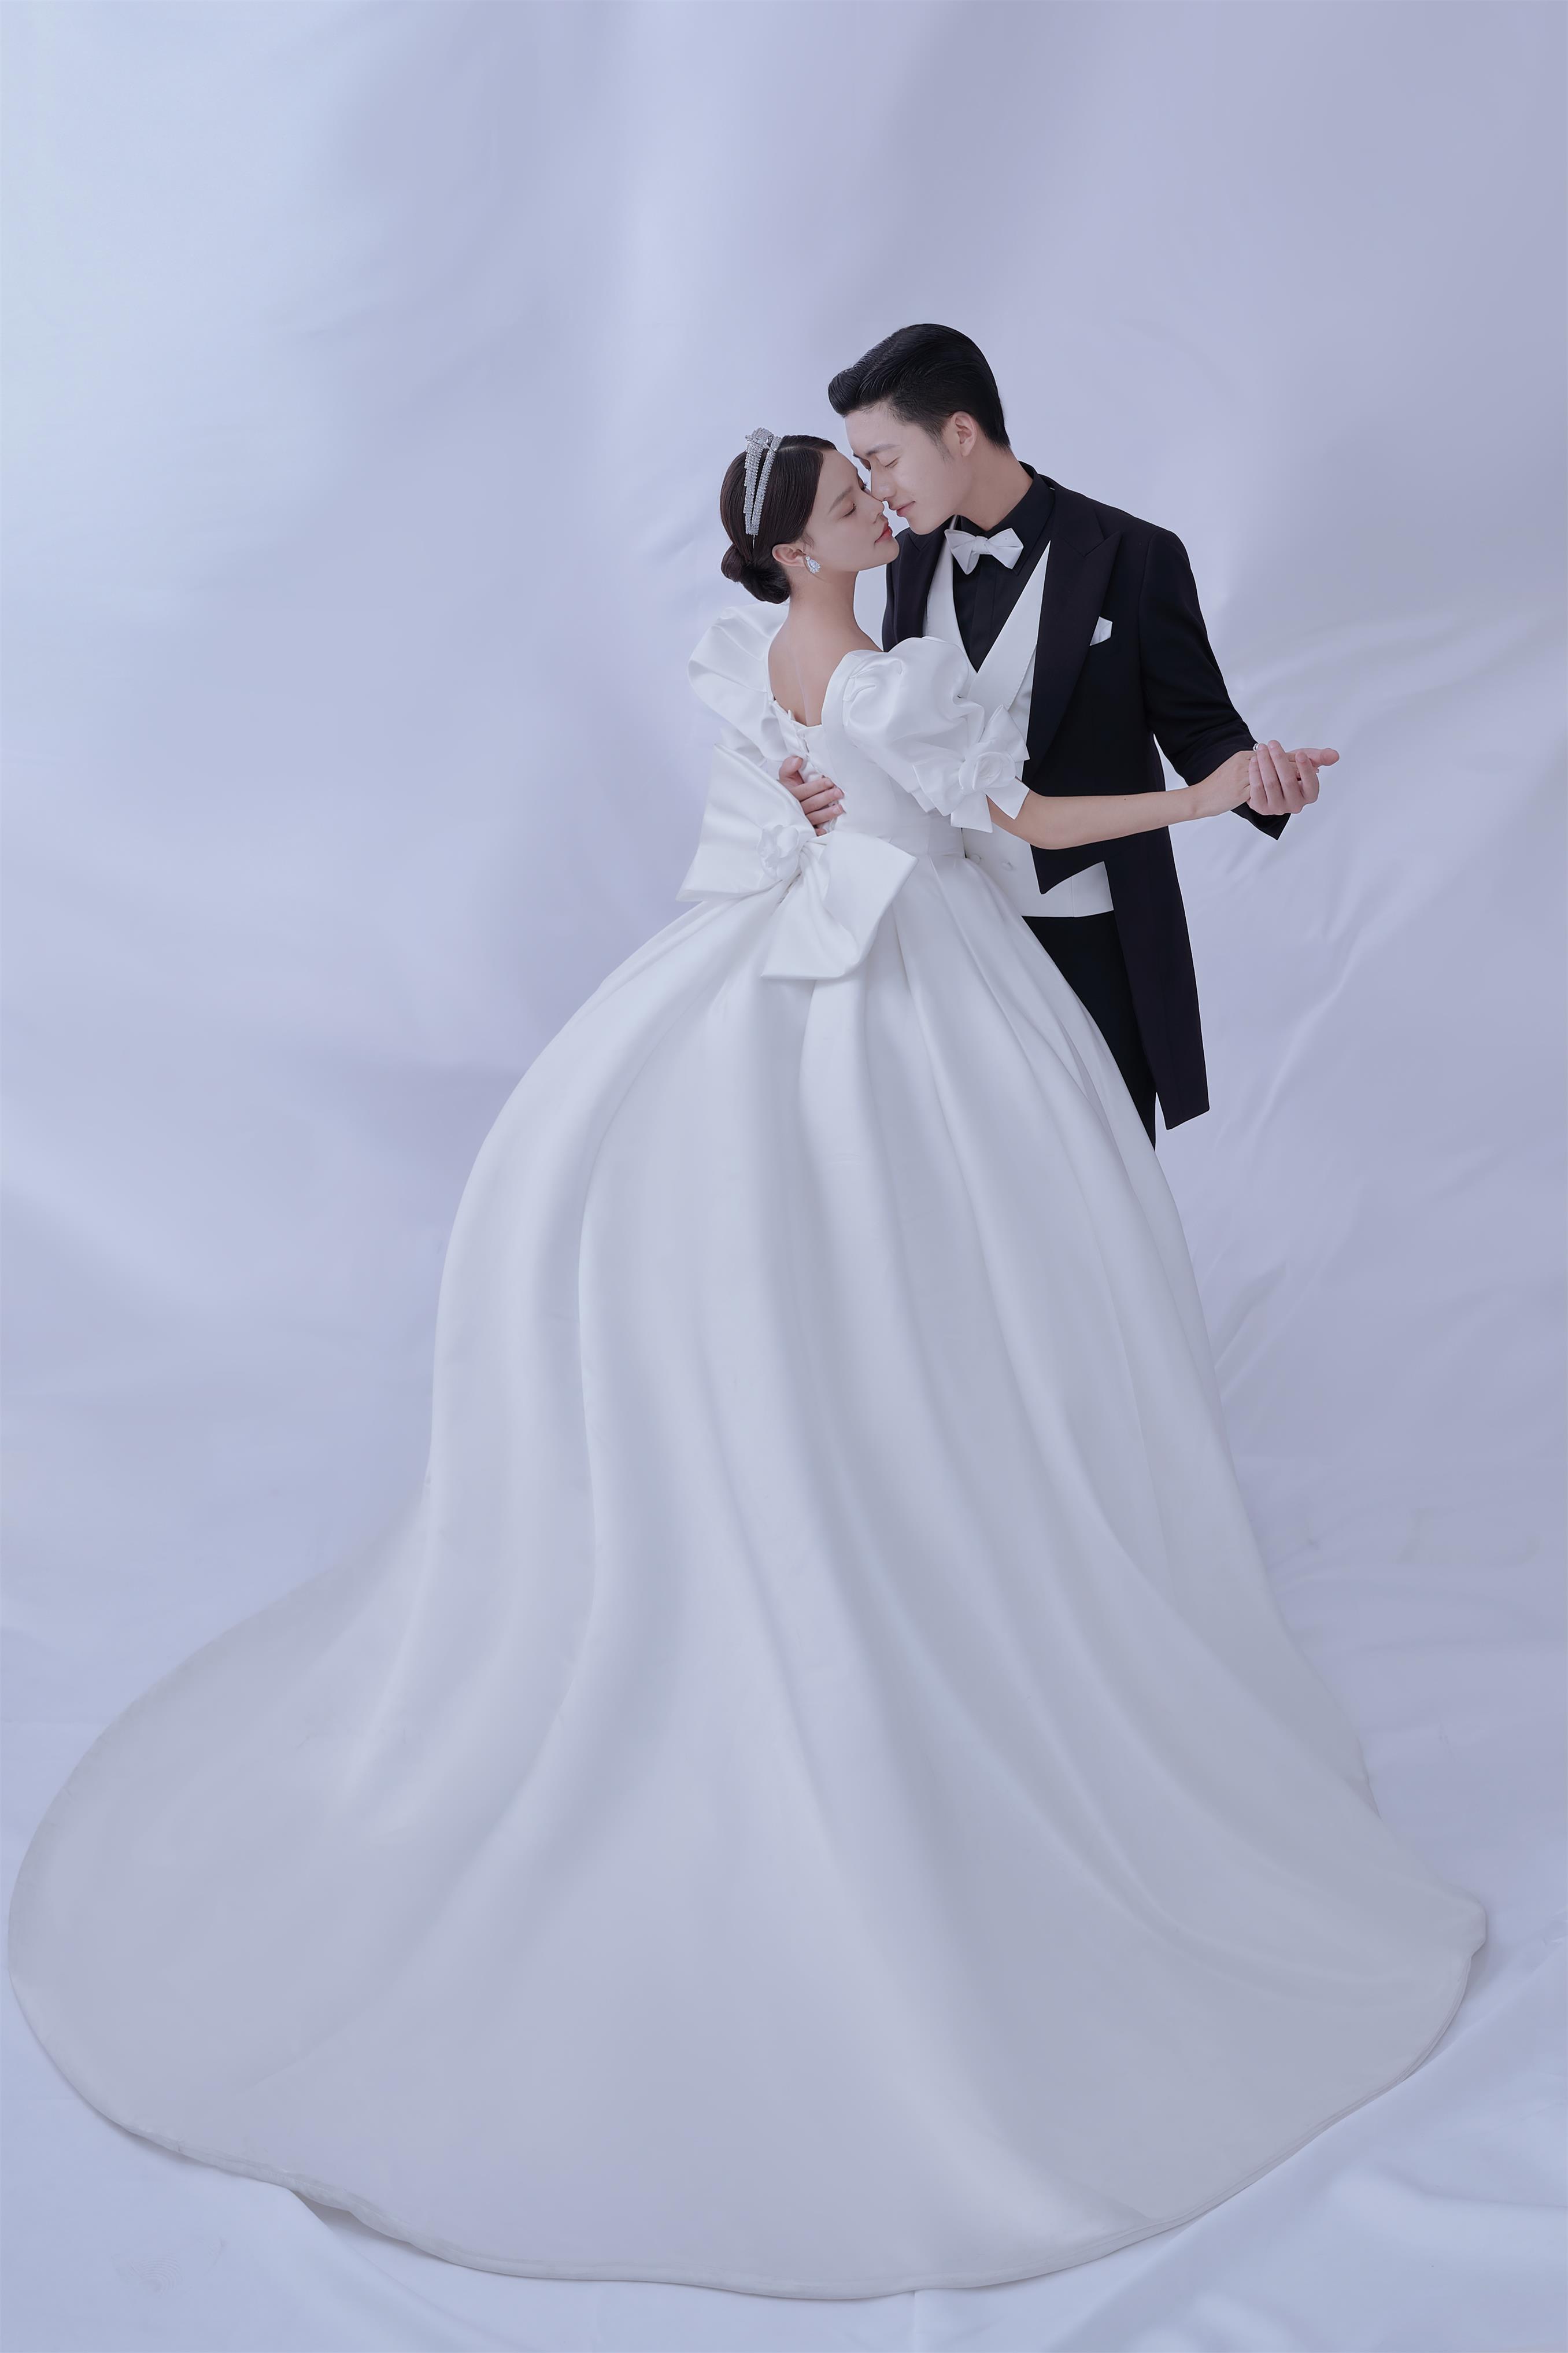 韓城婚紗高端定制 內外景拍攝四服四造